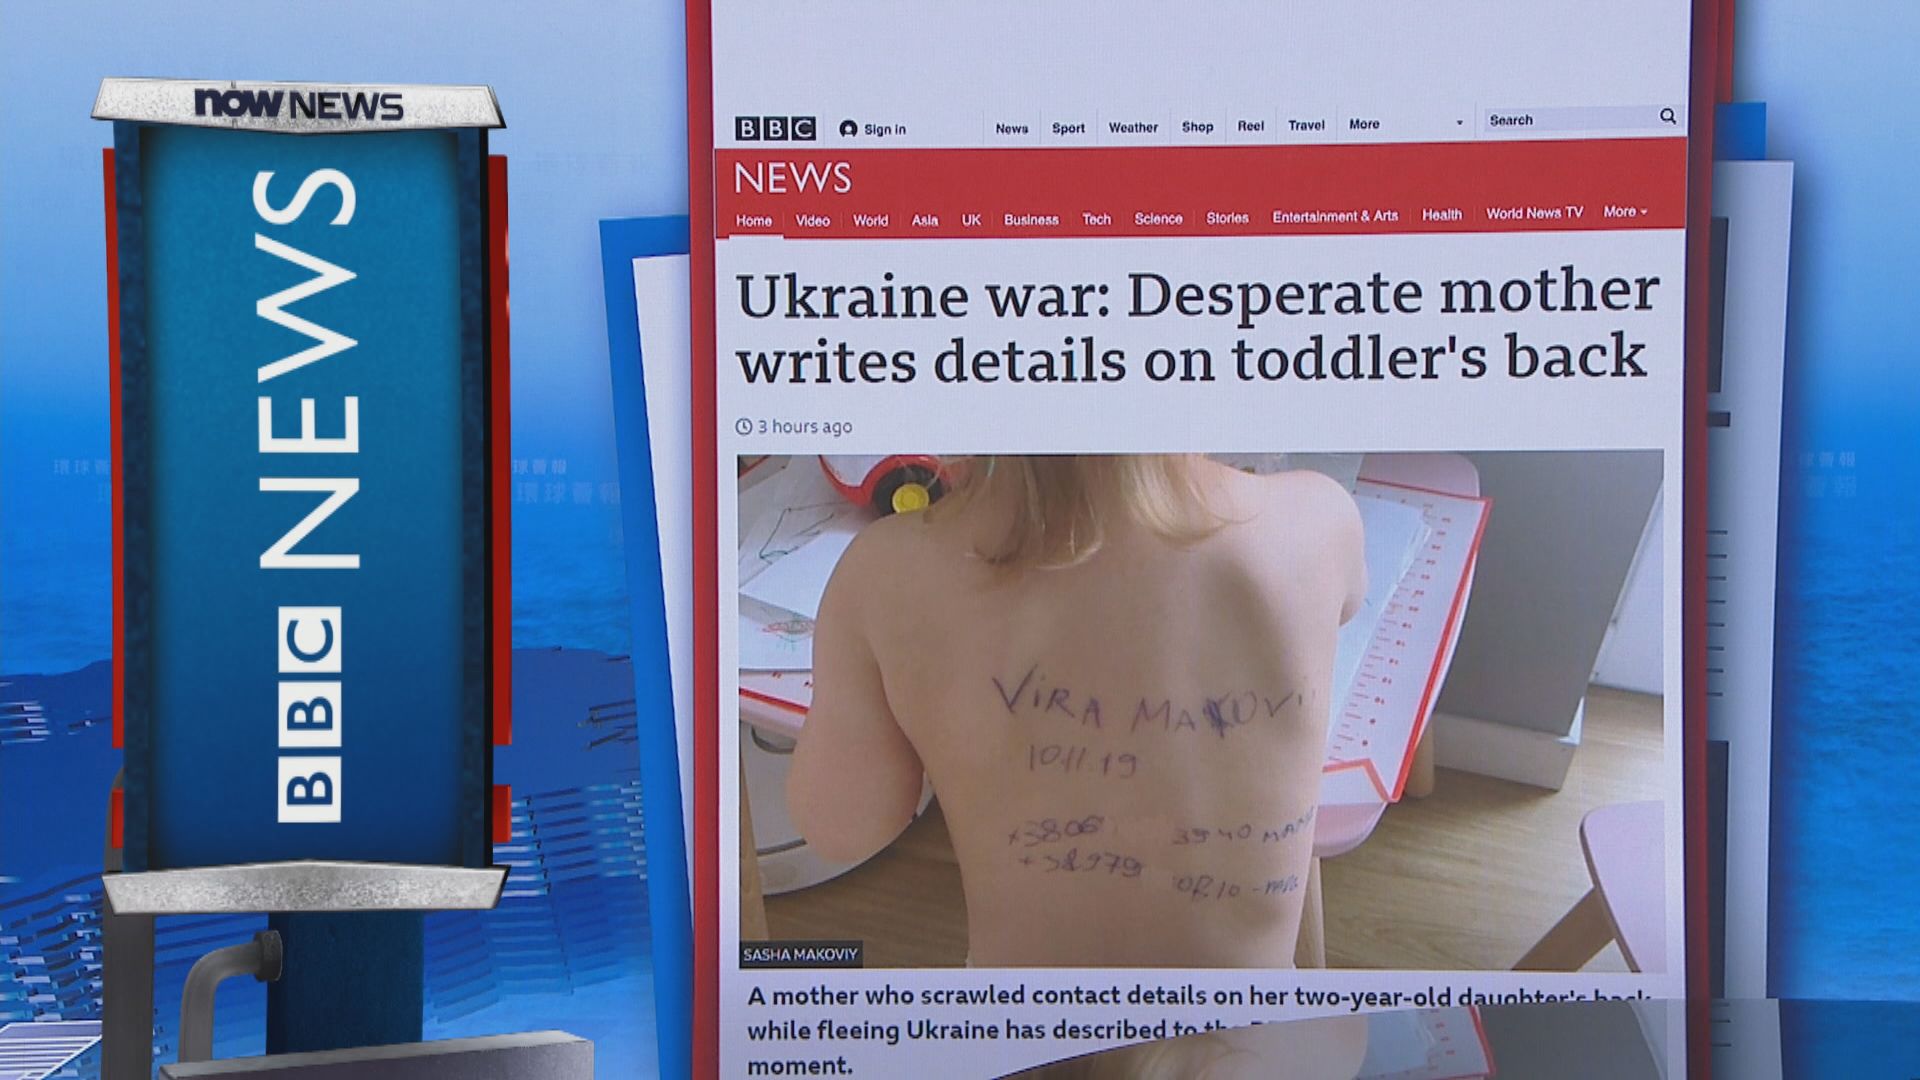 【環球薈報】為防走難失散　烏克蘭母親在女兒背上寫下個人資料